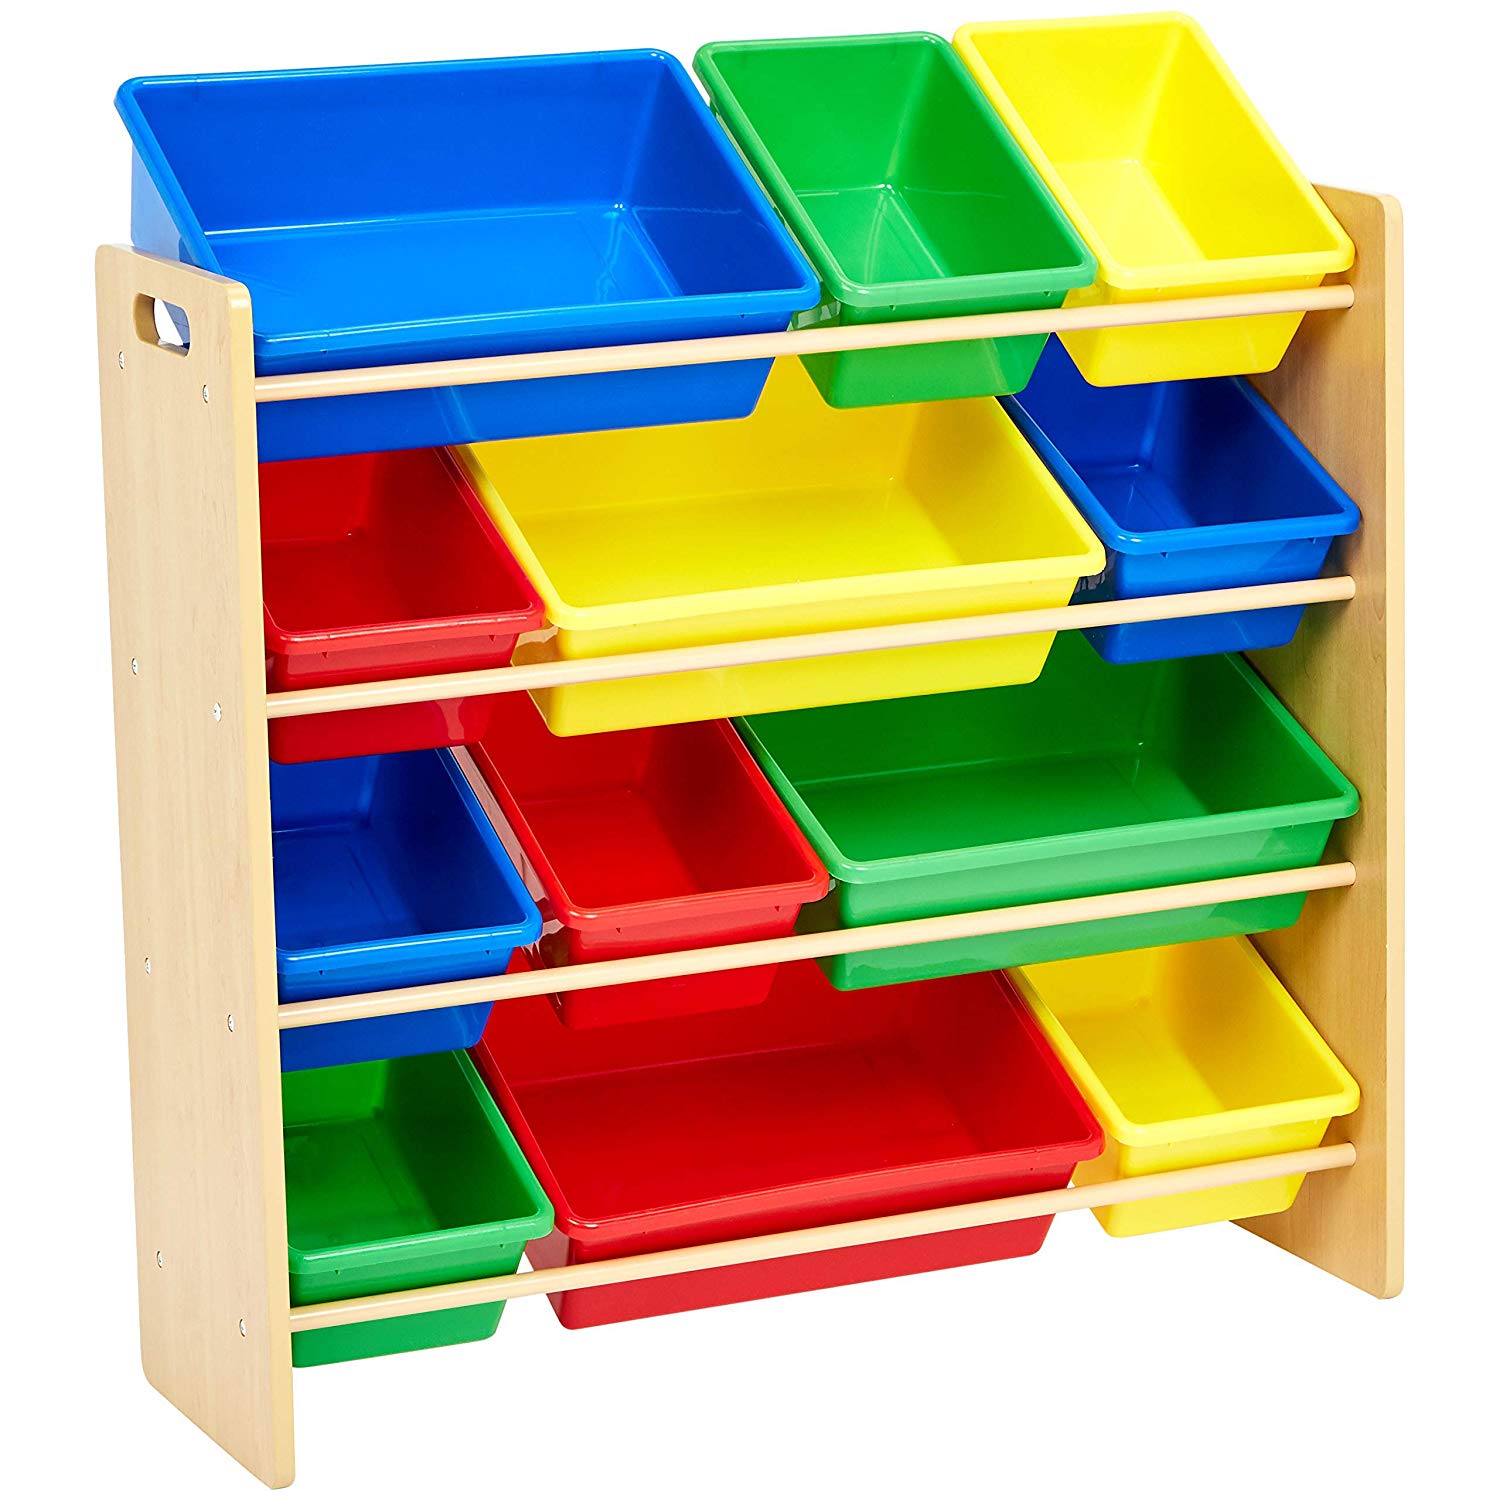 AmazonBasics Kids Toy Storage Organizer Bins 